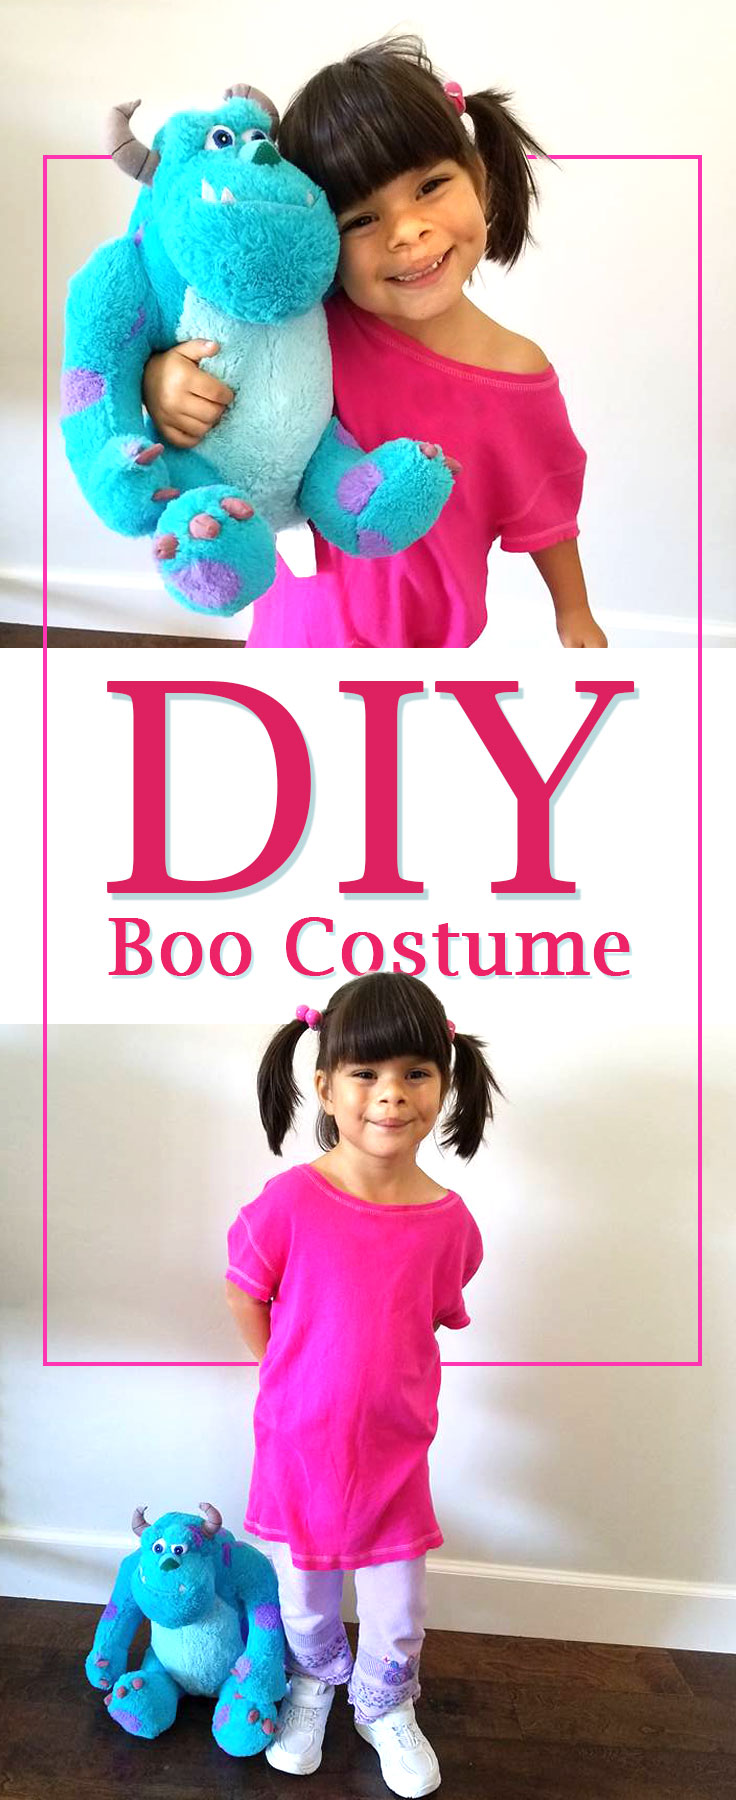 DIY Boo Costume